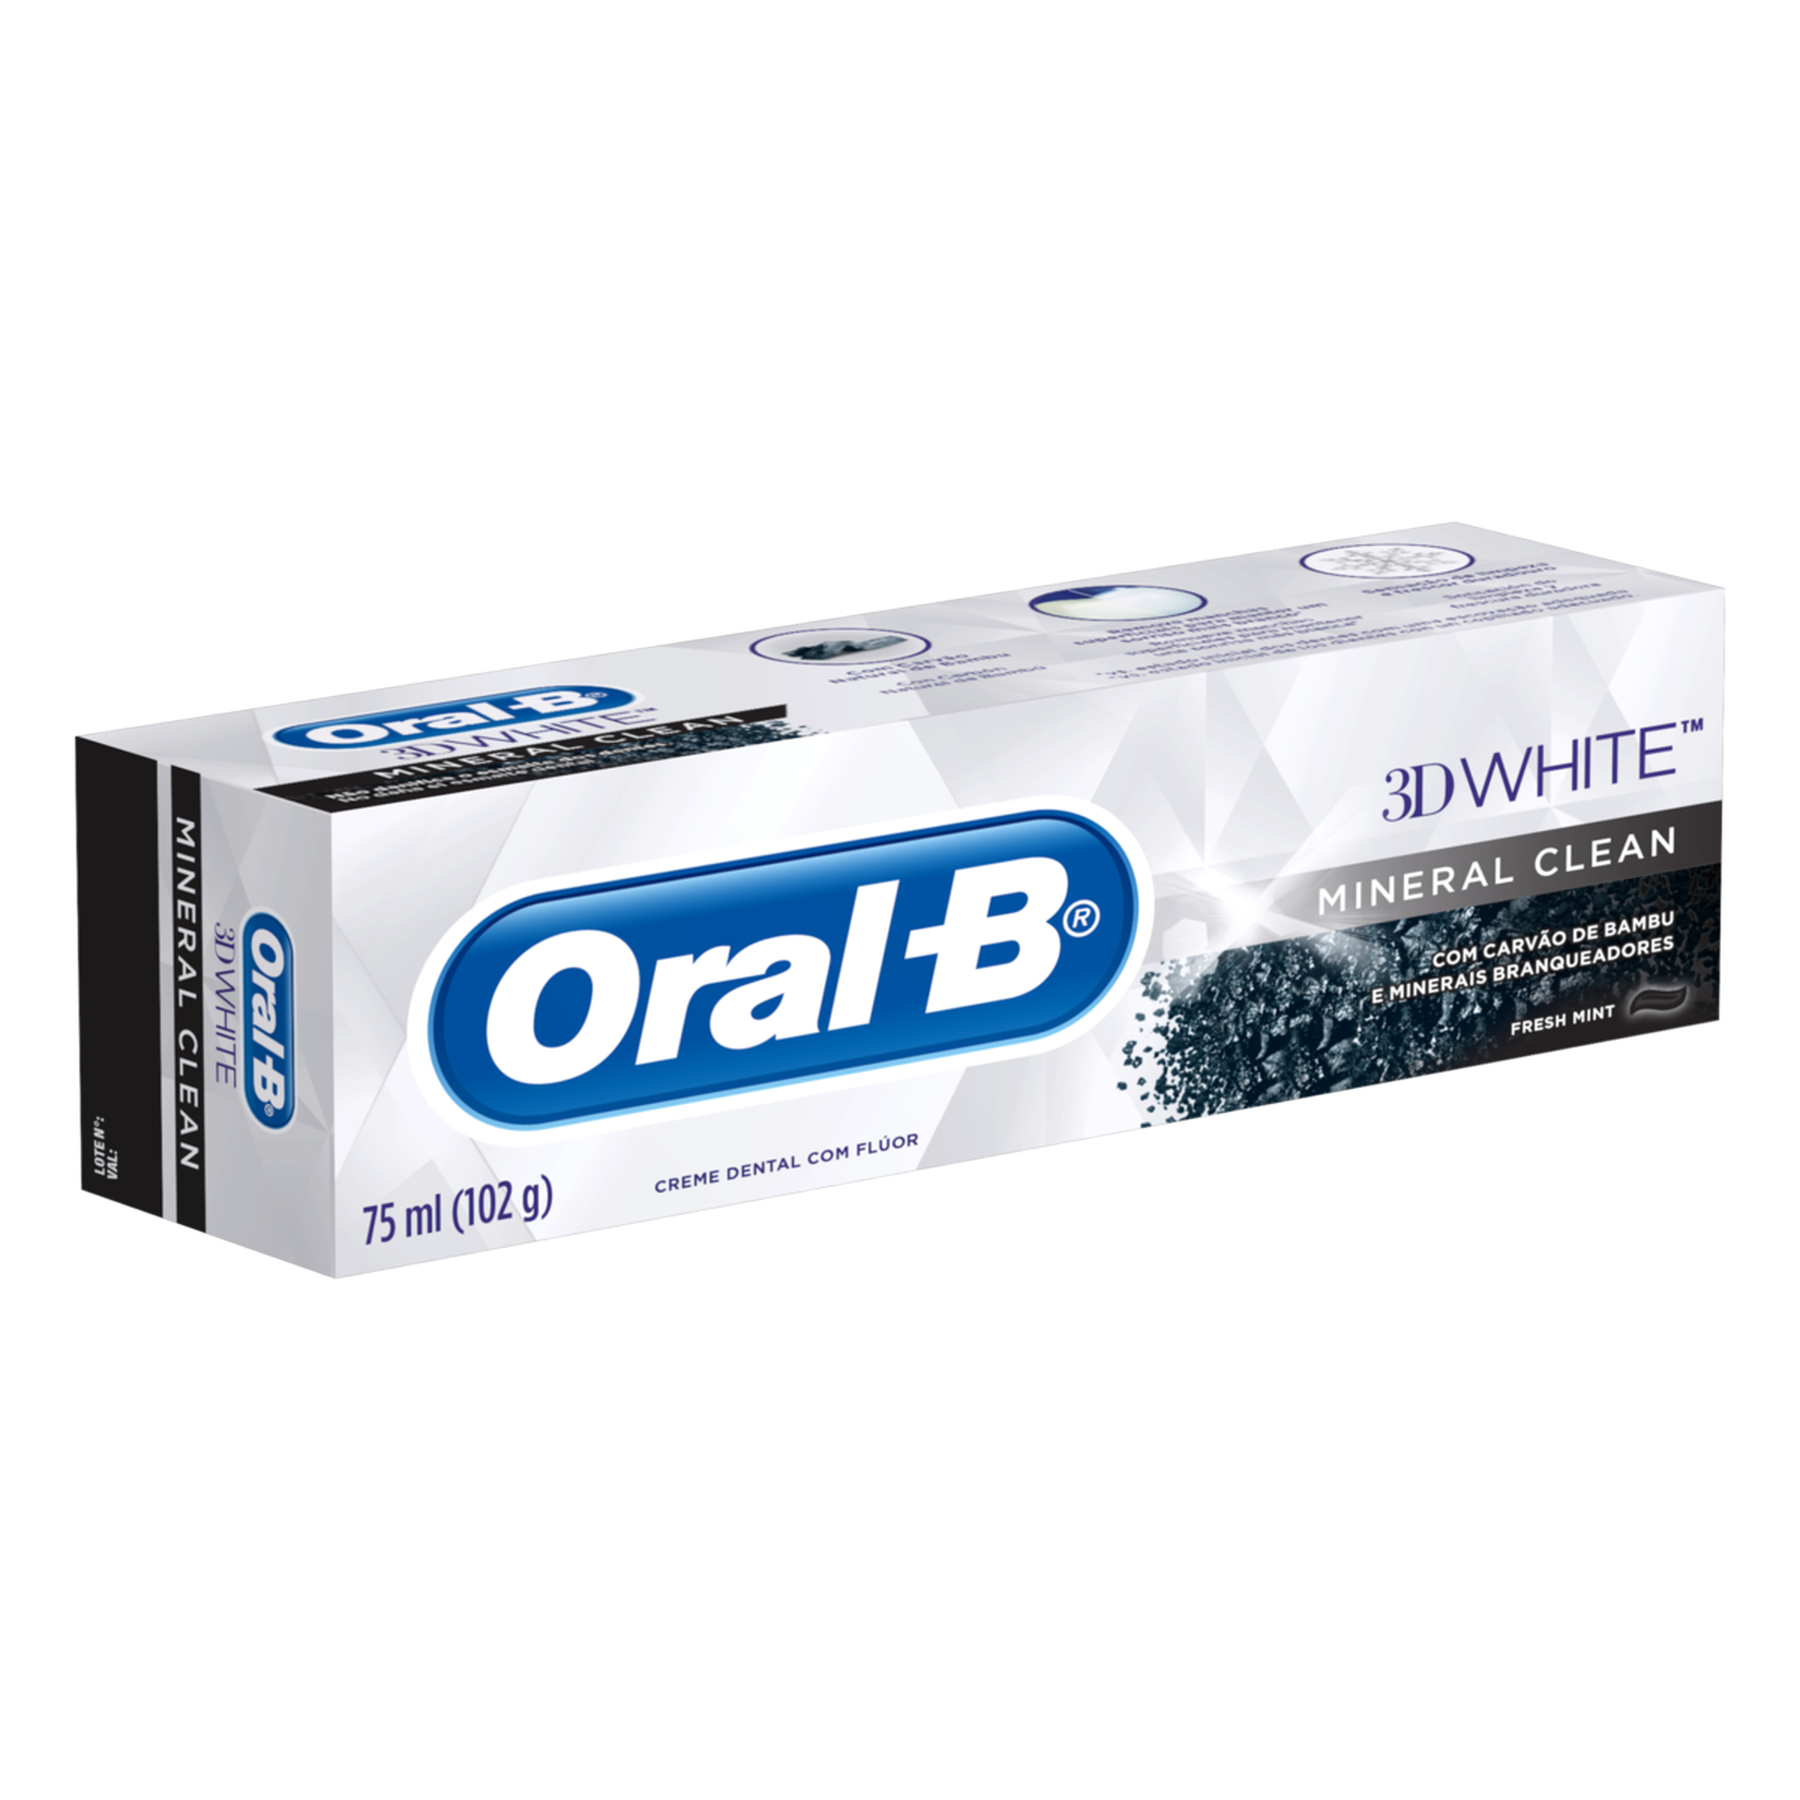 Creme Dental Mineral Clean Fresh Mint 3D White Oral-B Caixa 102g